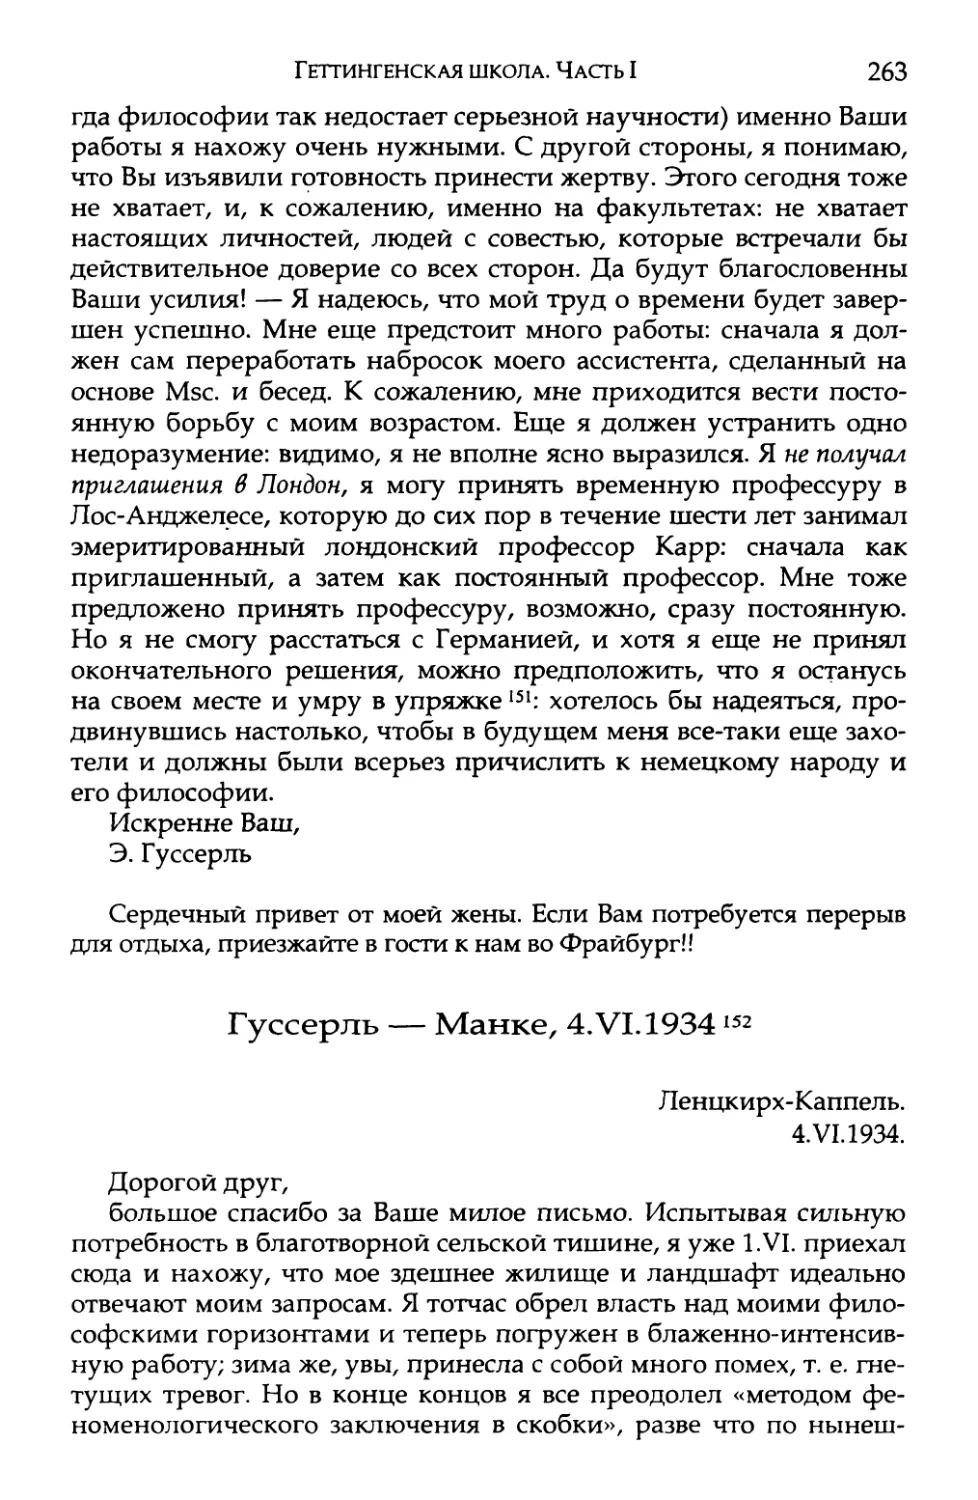 Гуссерль — Манке, 4.VI.1934. Перевод Е. В. Борисова